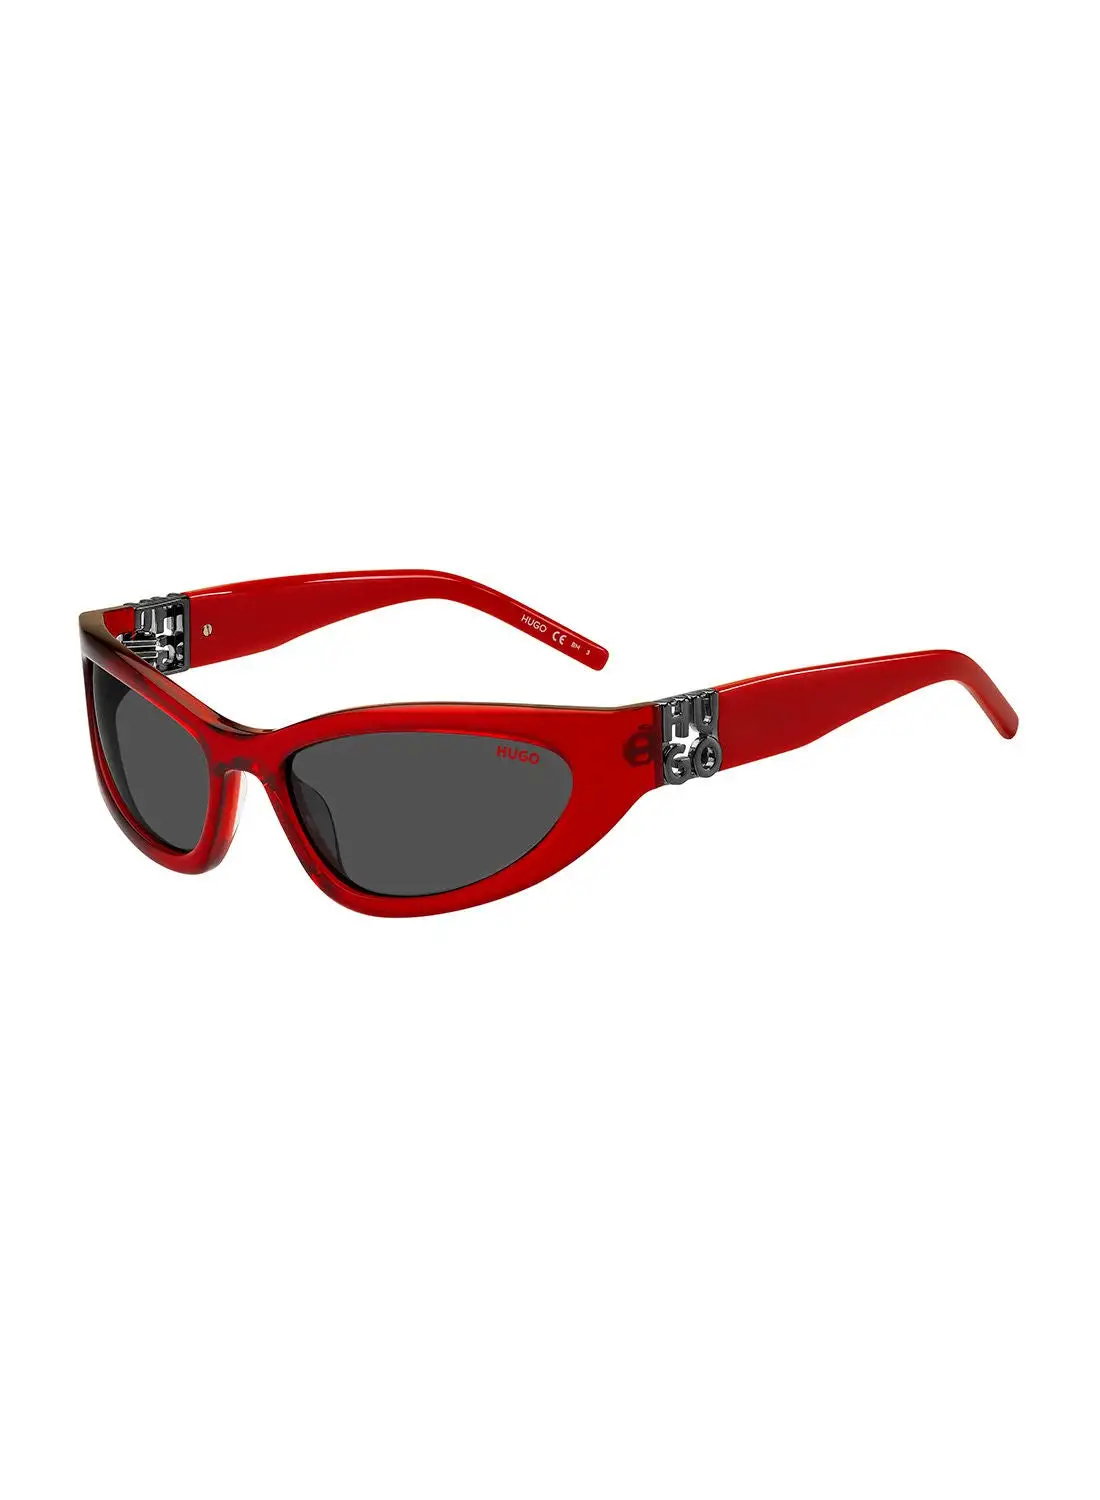 HUGO Men's UV Protection Cat Eye Sunglasses - Hg 1255/S Red 59 - Lens Size: 59 Mm